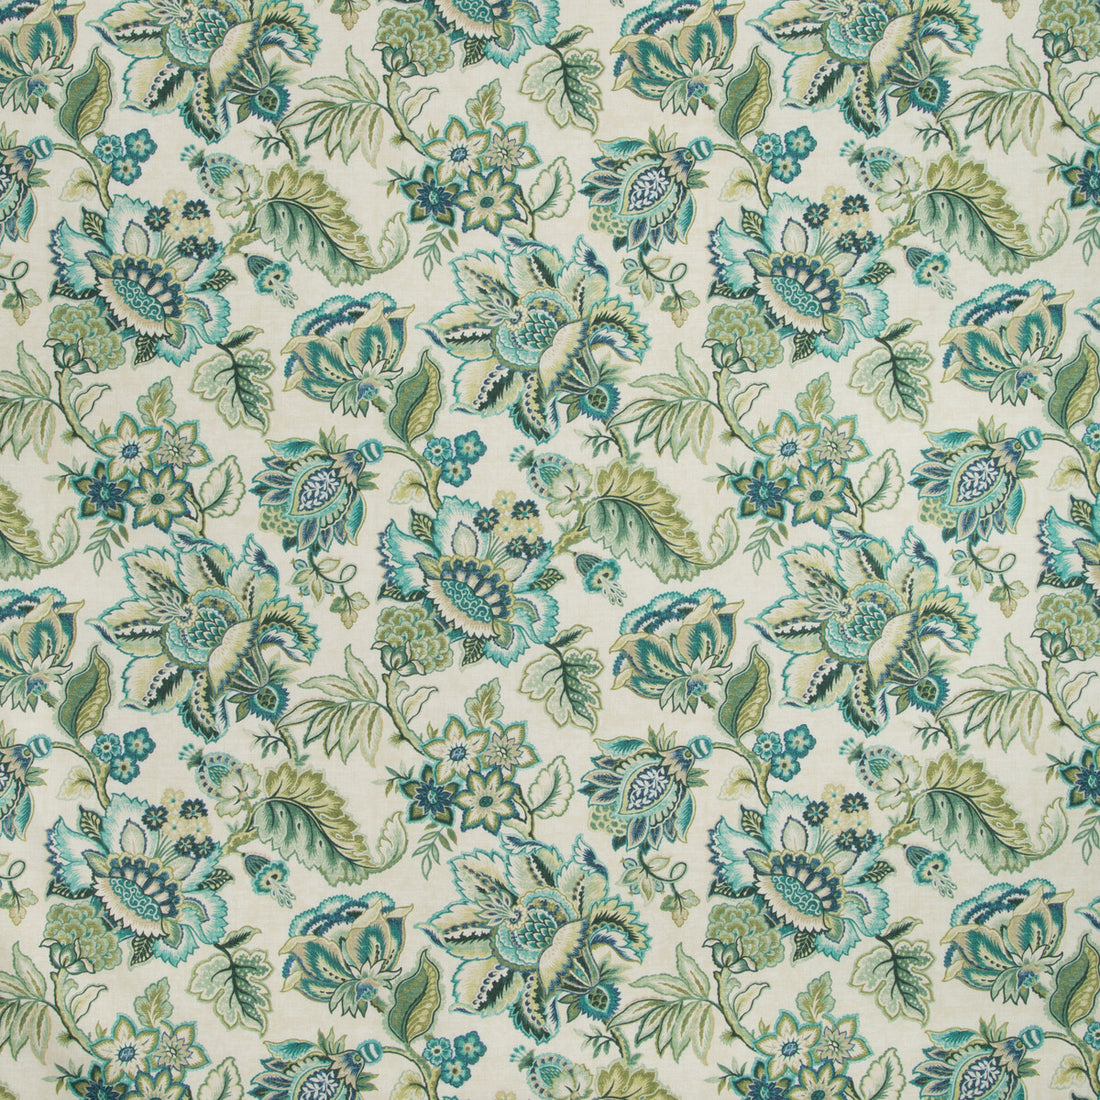 Kravet Basics fabric in kihei-513 color - pattern KIHEI.513.0 - by Kravet Basics